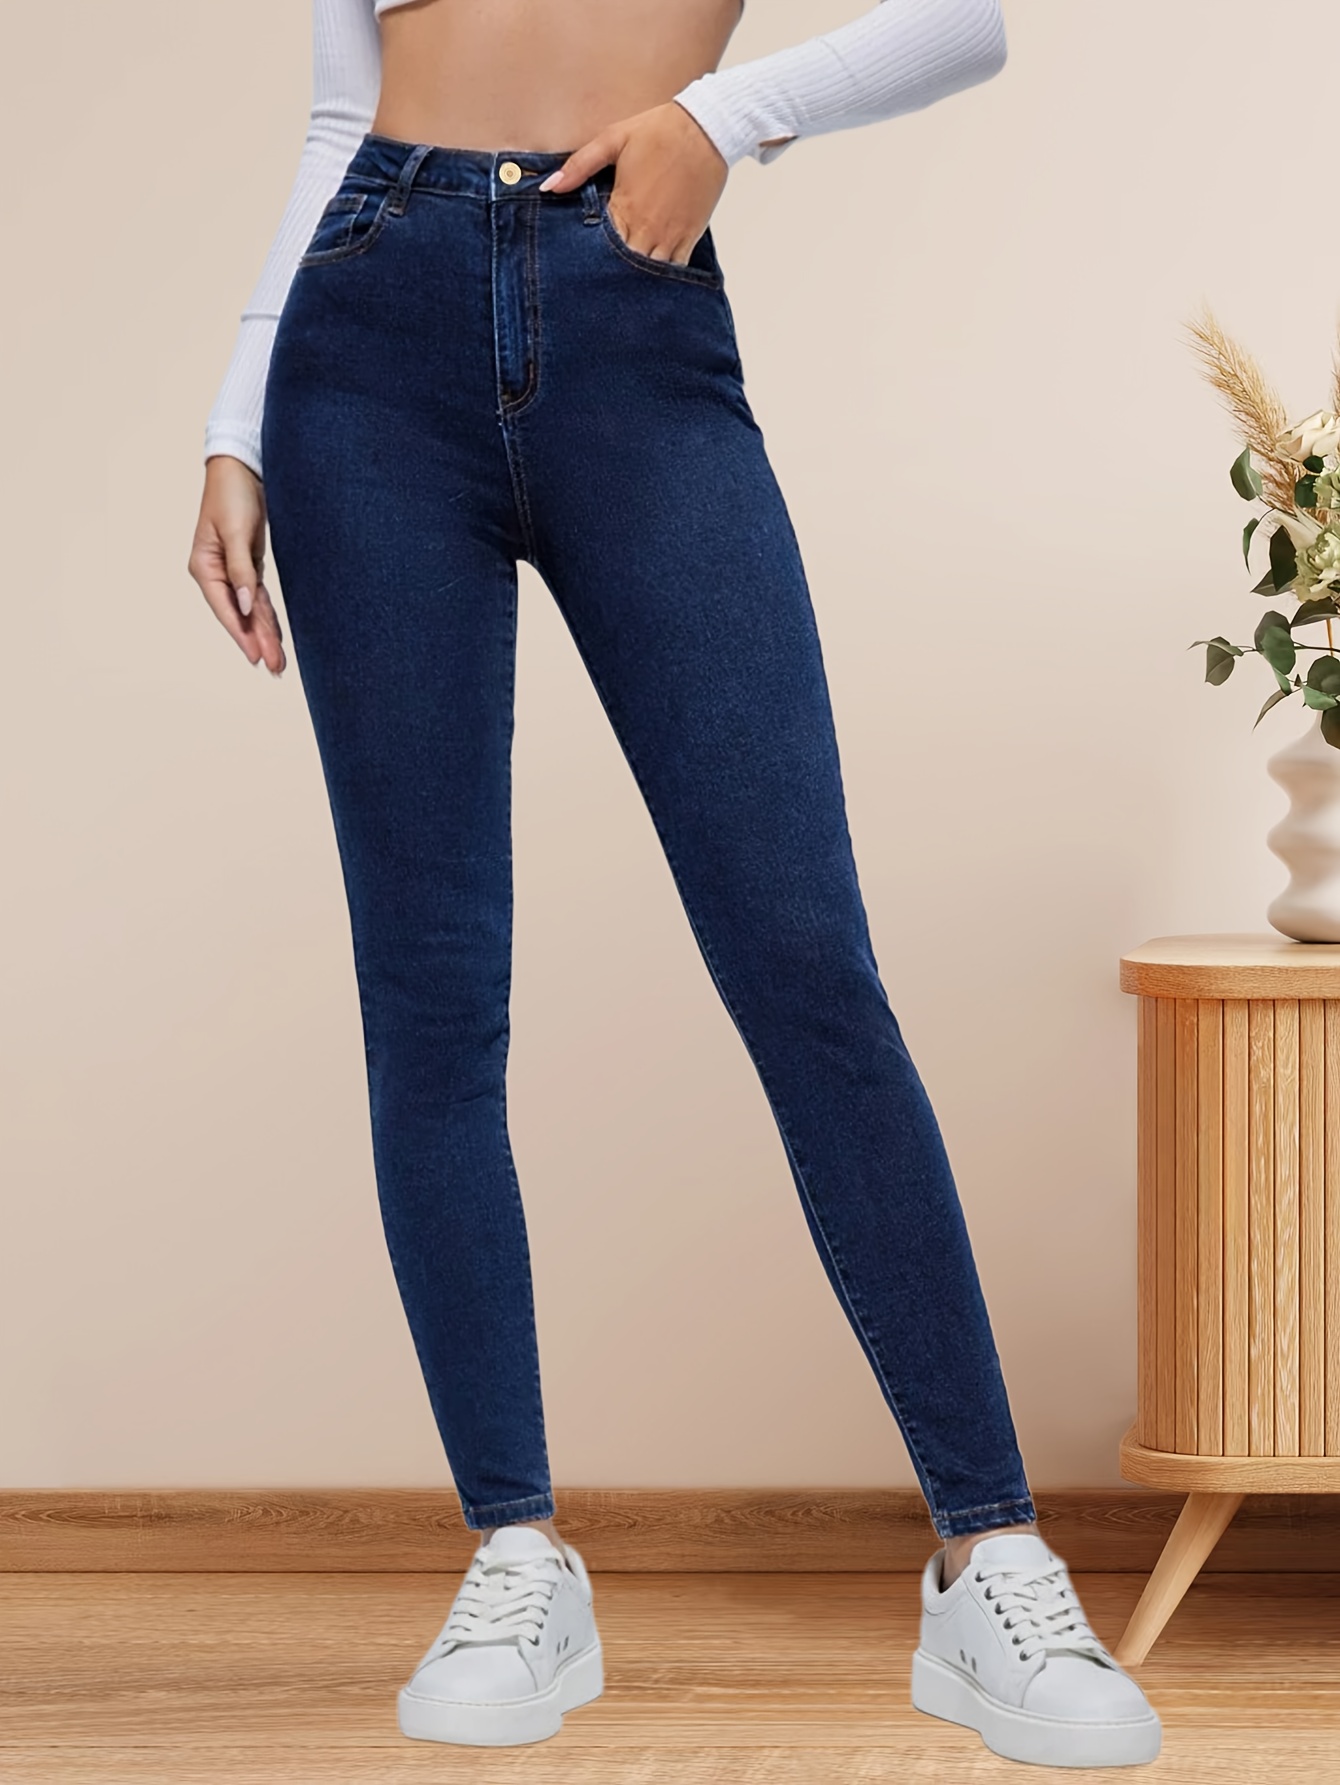 Jeans de cintura alta para mujer